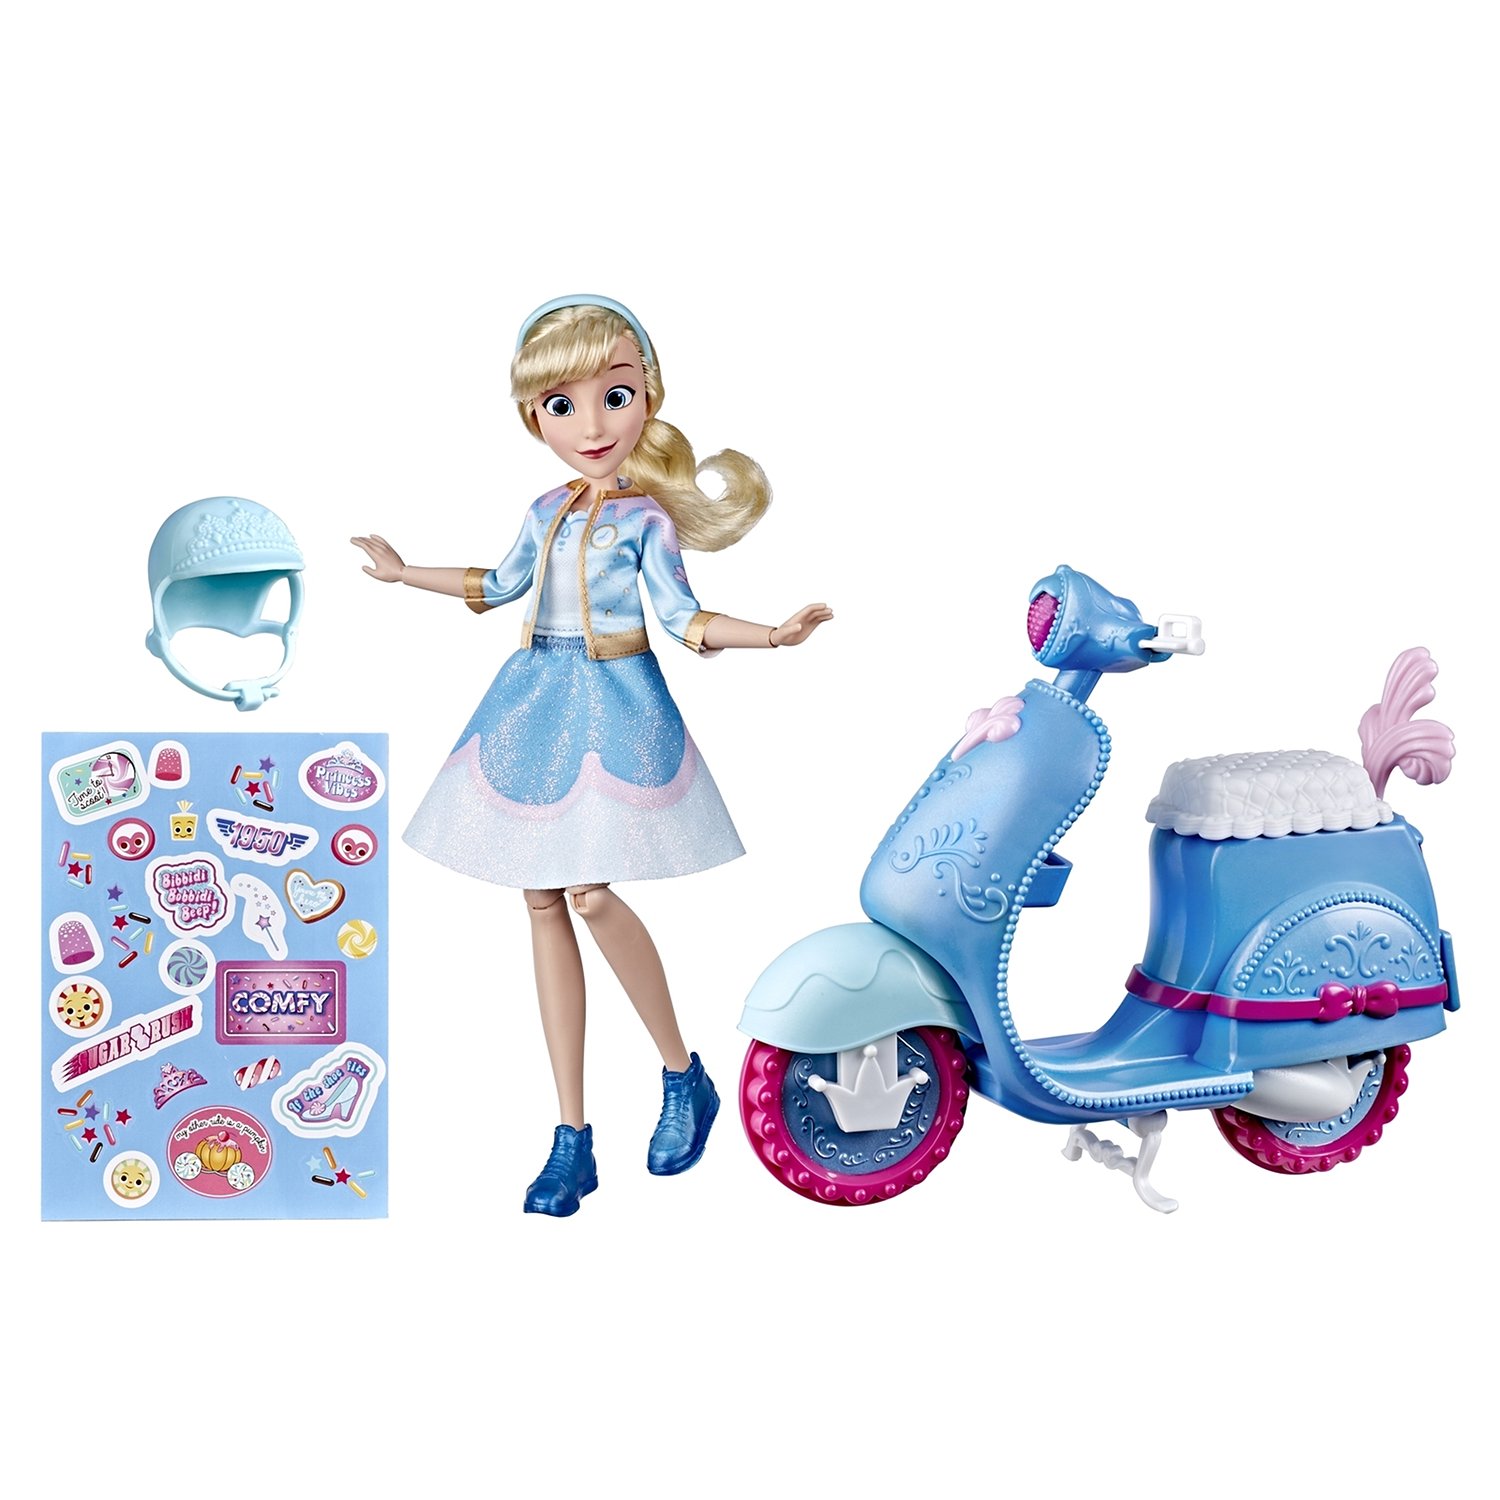 Кукла Hasbro Disney Princess Комфи Скутер E89375L0